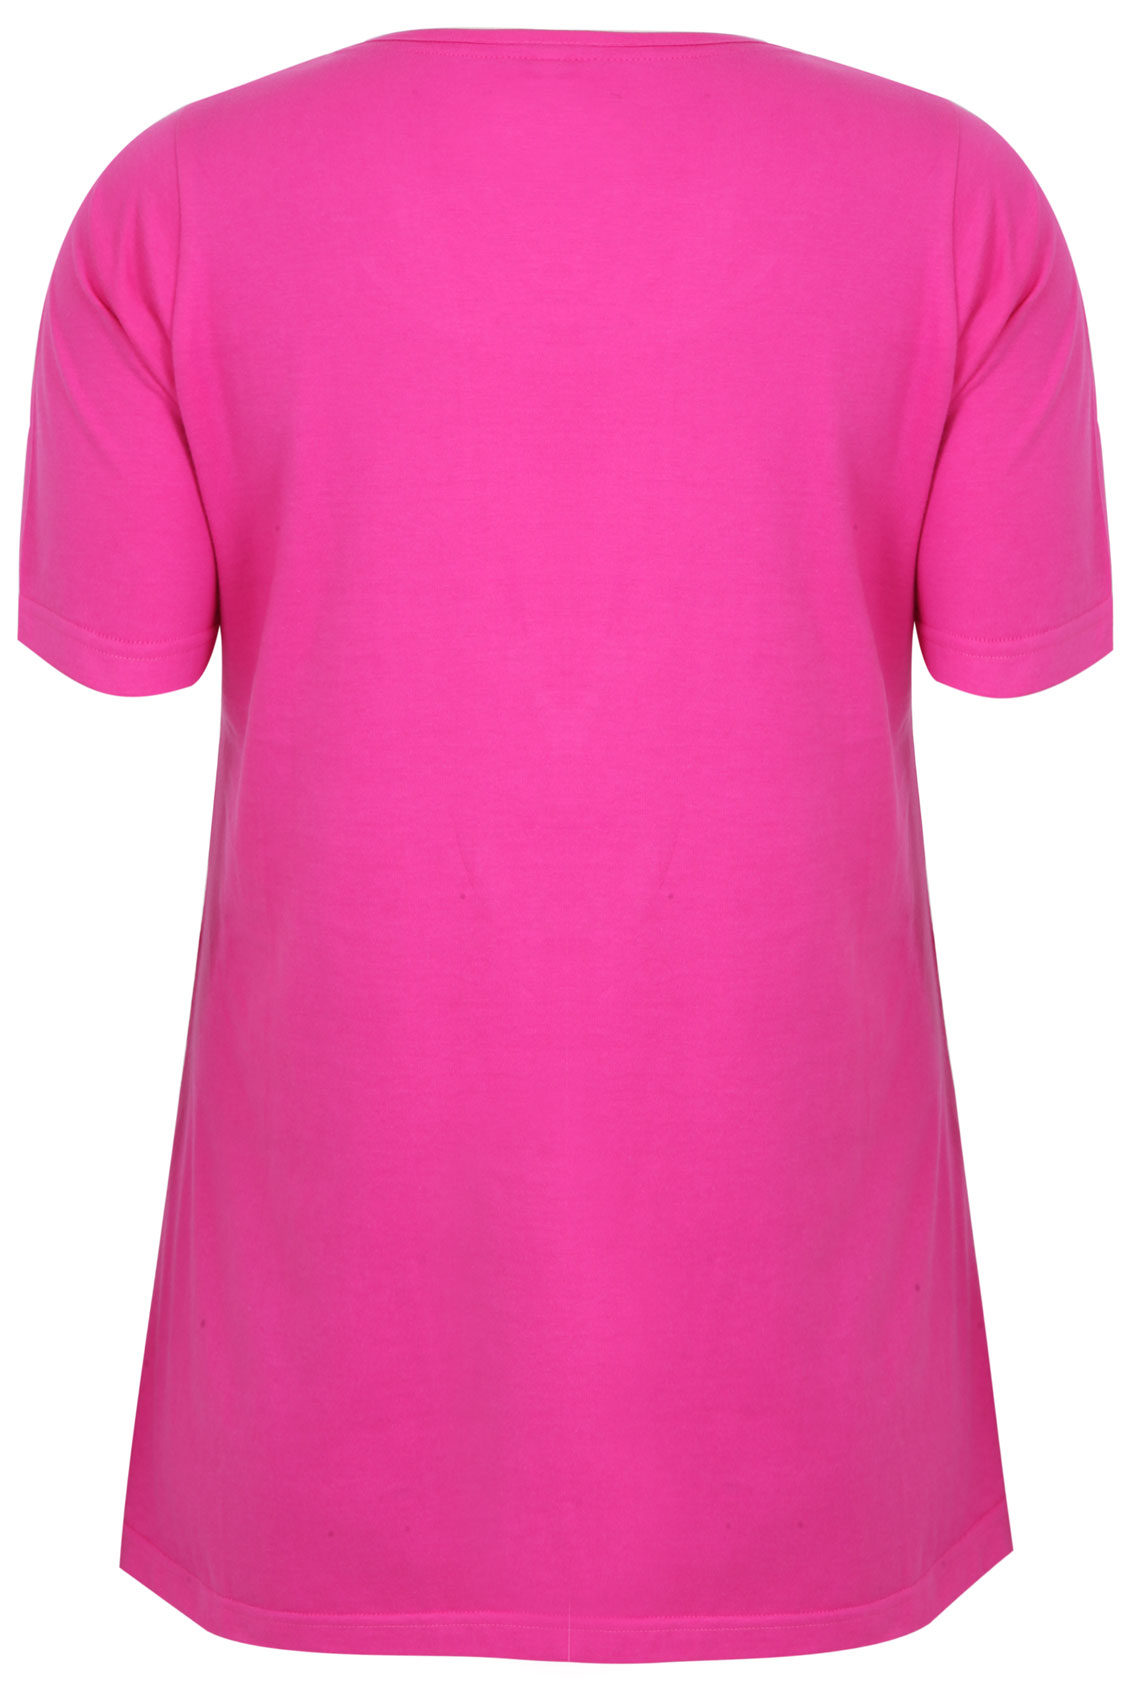 Pink scoop neck t shirt